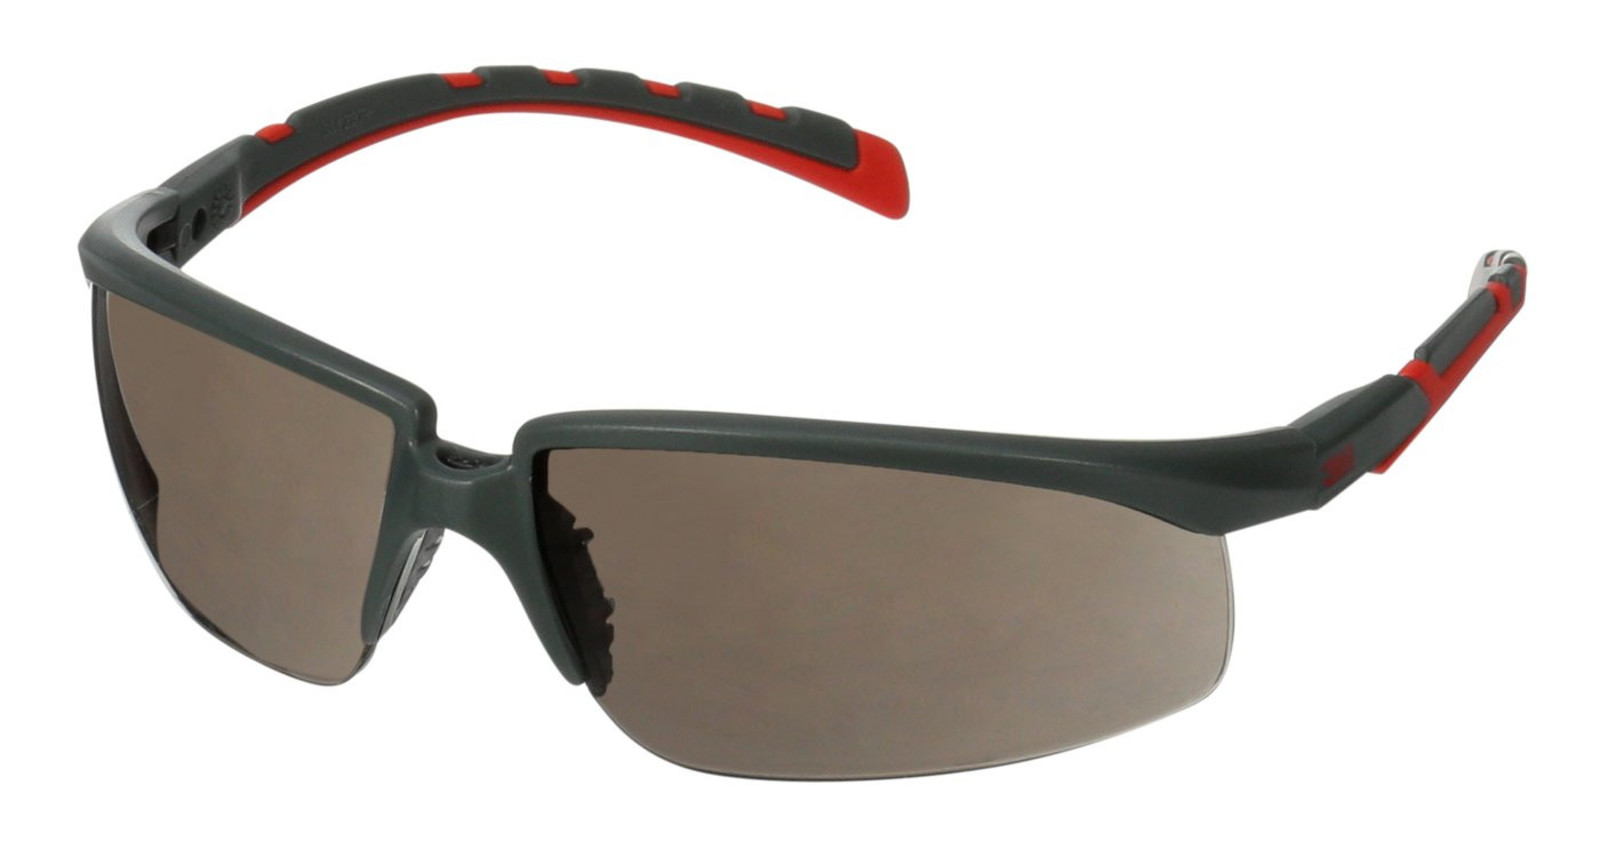 Ochranné okuliare 3M Solus 2000 - farba: sivá/červená